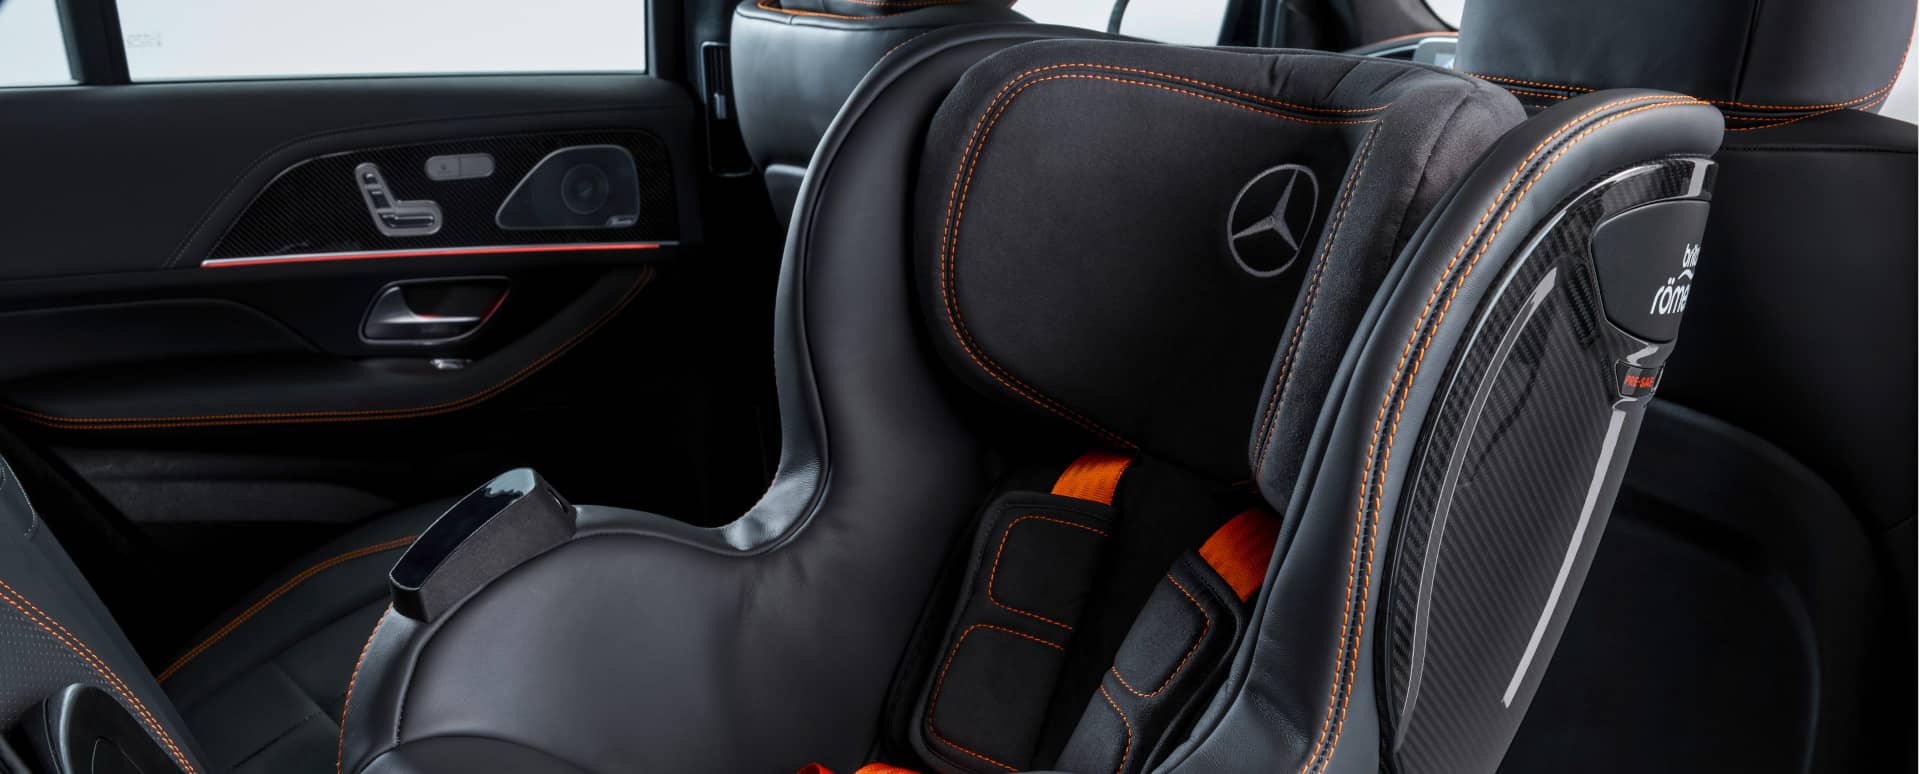 ISOFIX Rear Car Seats In Mercedes-Benz